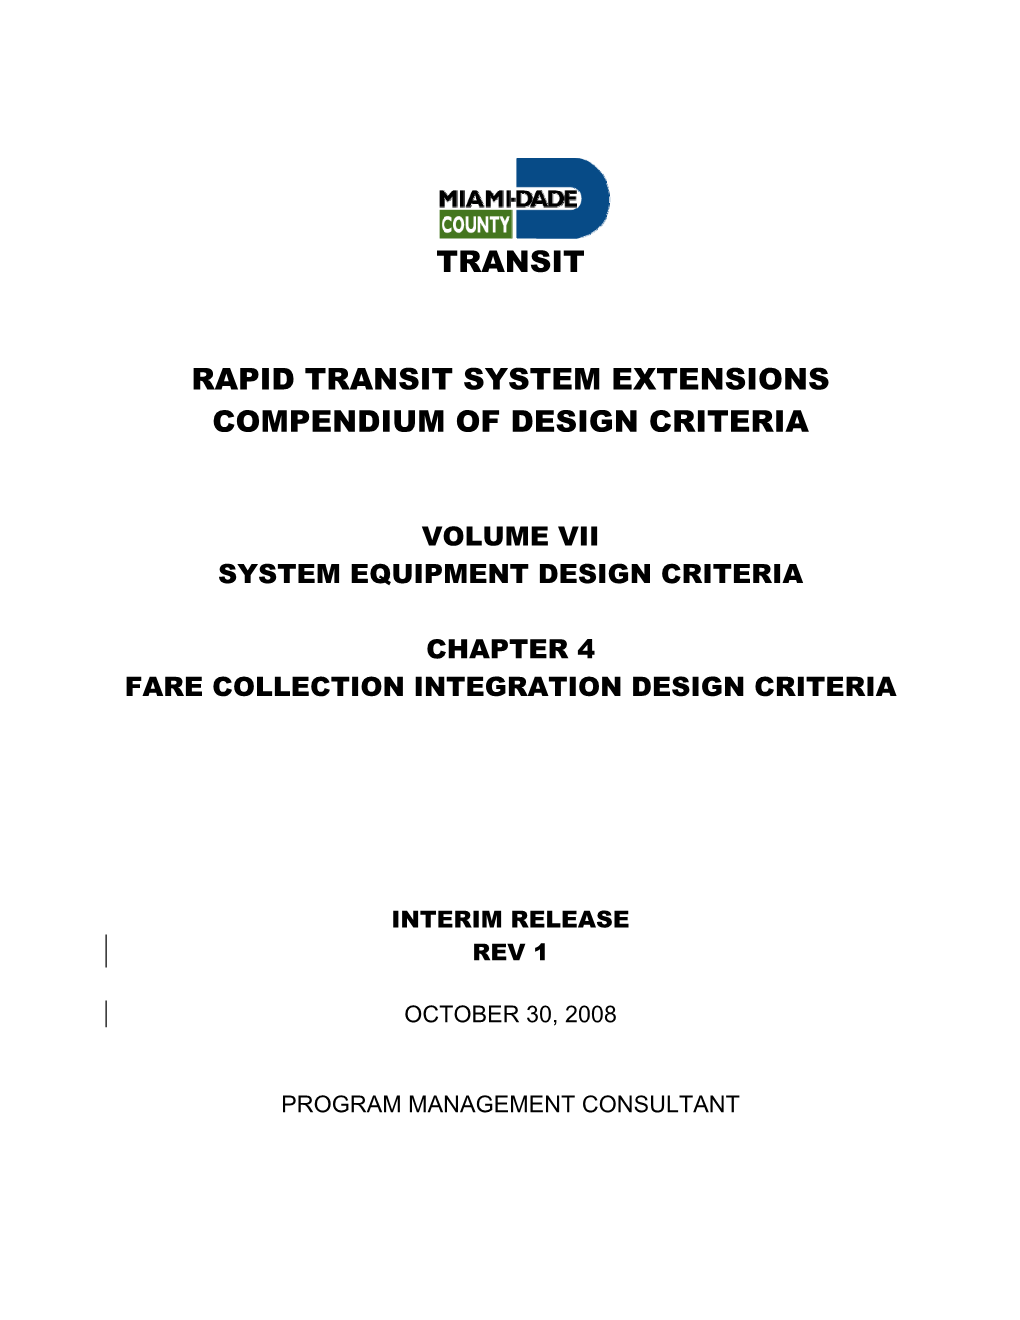 Transit Rapid Transit System Extensions Compendium of Design Criteria